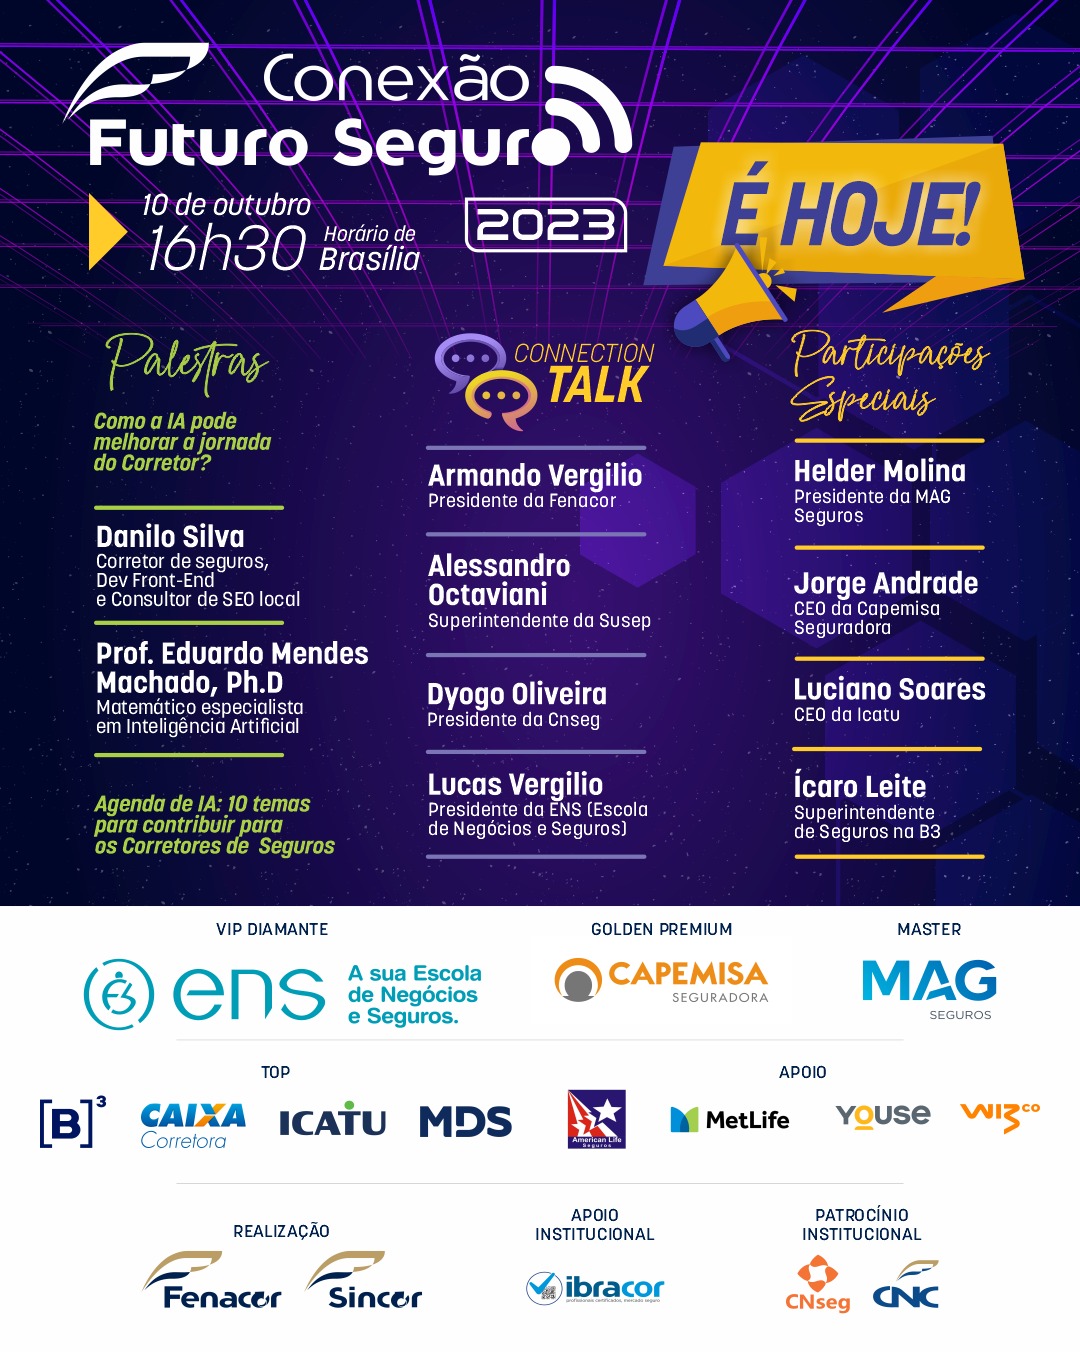 Aproveite a Programação Especial riquíssima em conteúdo do Conexão Futuro Seguro que acontece HOJE às 16h30 (horário de Brasília).